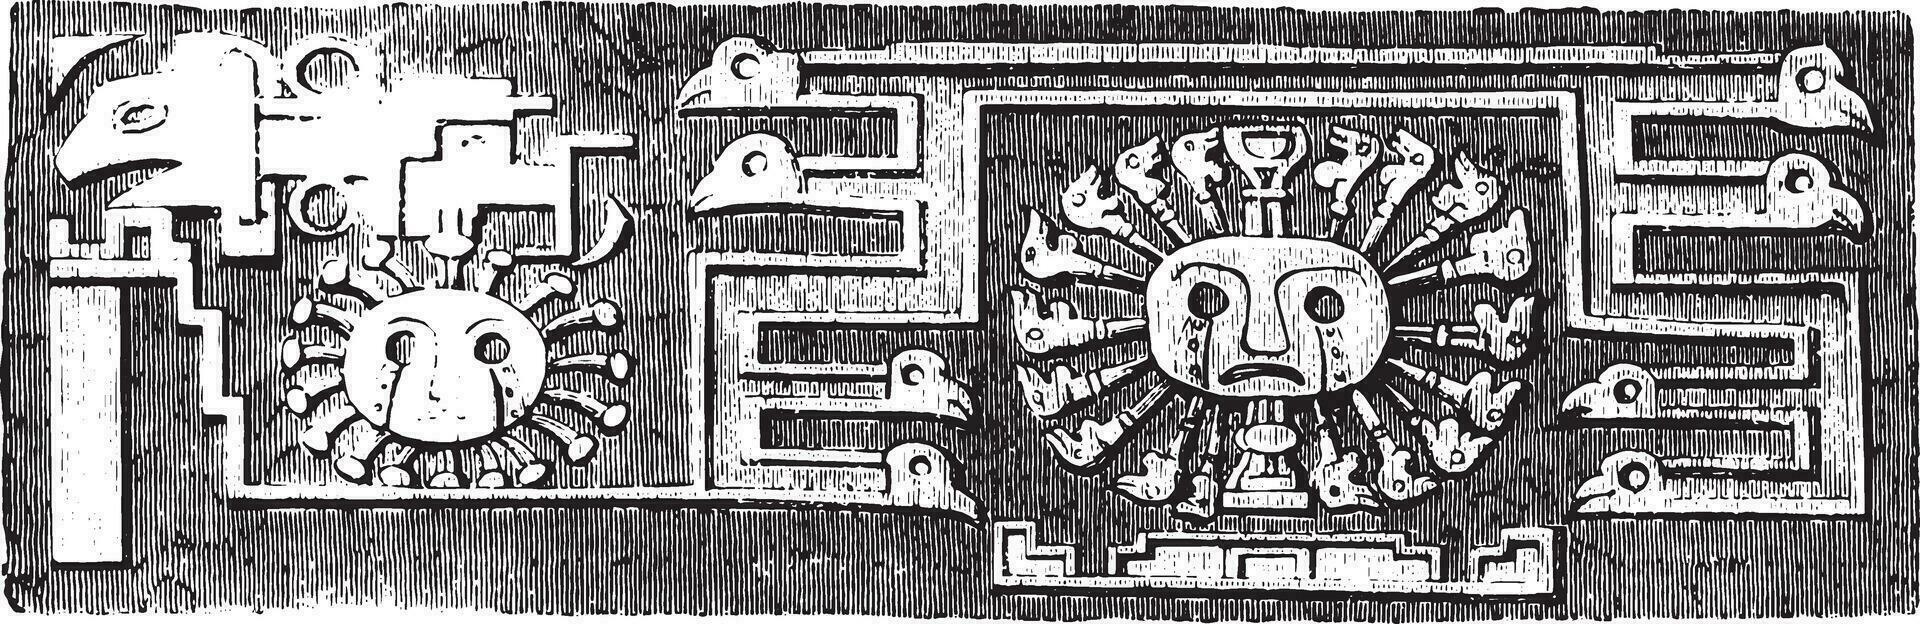 Einzelheiten von das monolithisch Tor von Tiahuanaco, Peru, Jahrgang Gravur. vektor